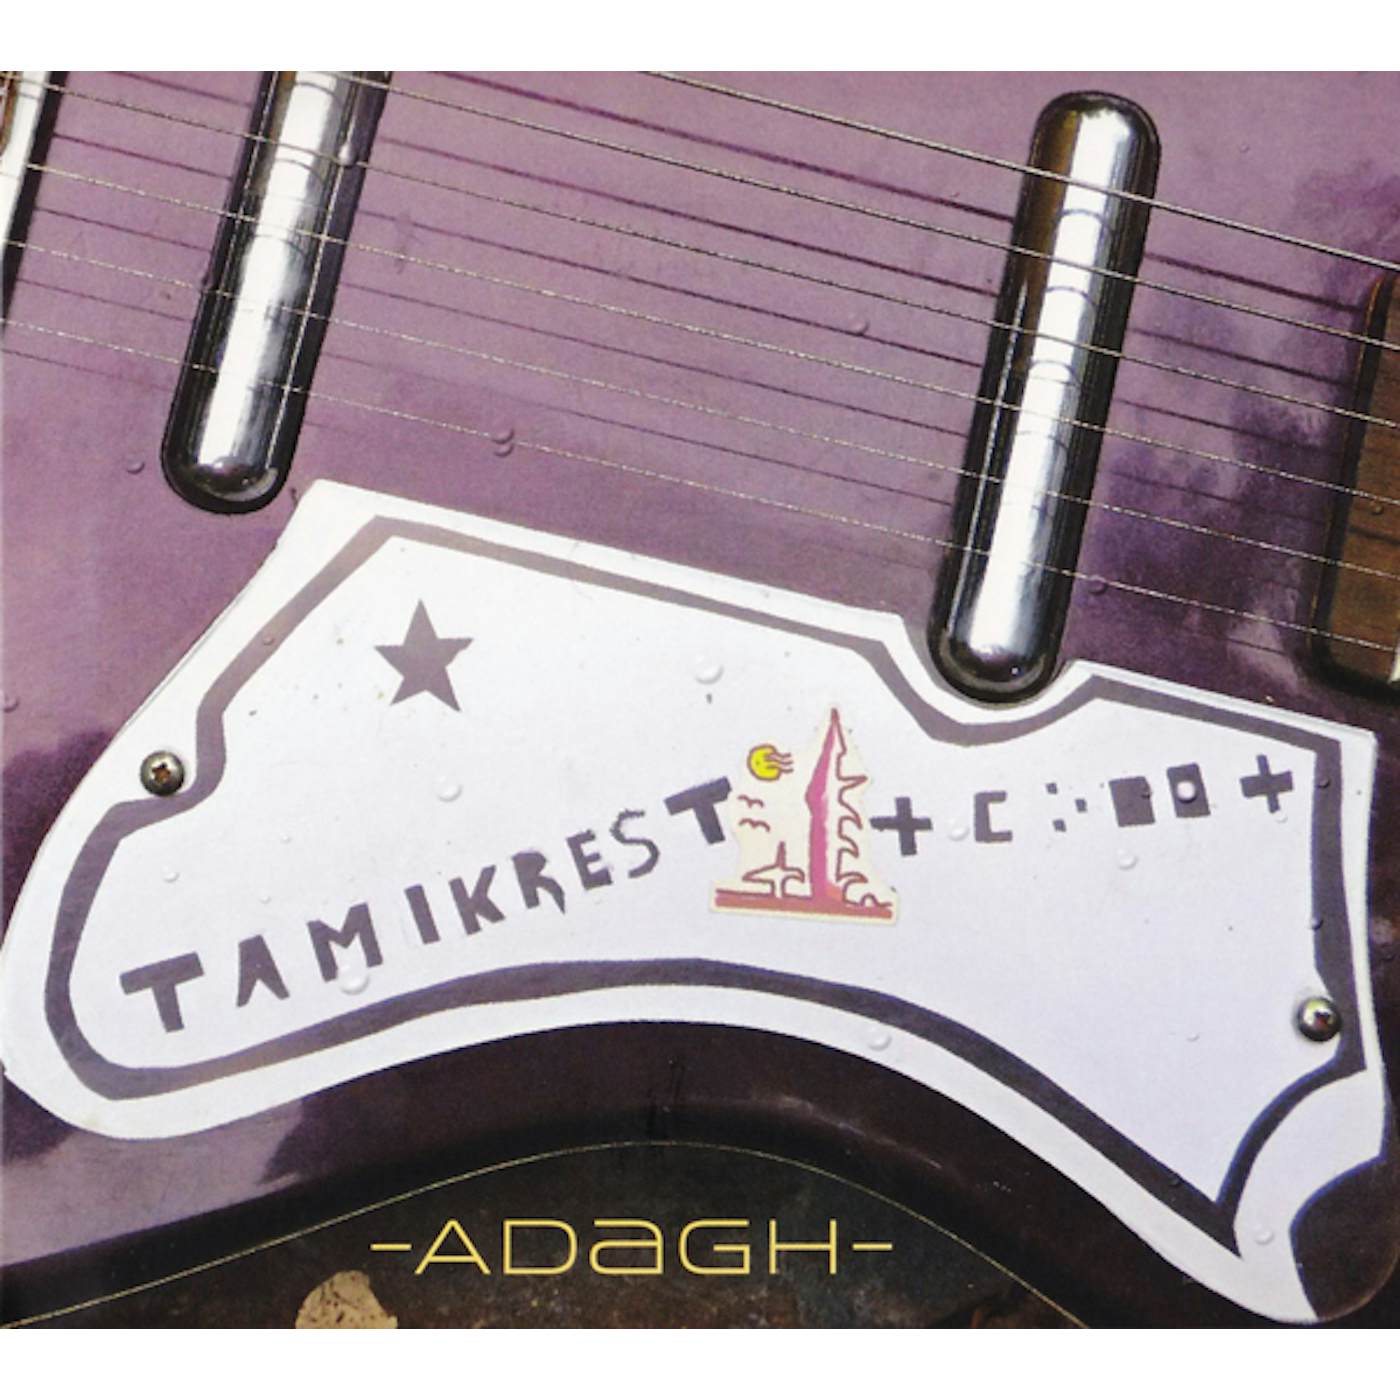 Tamikrest ADAGH CD